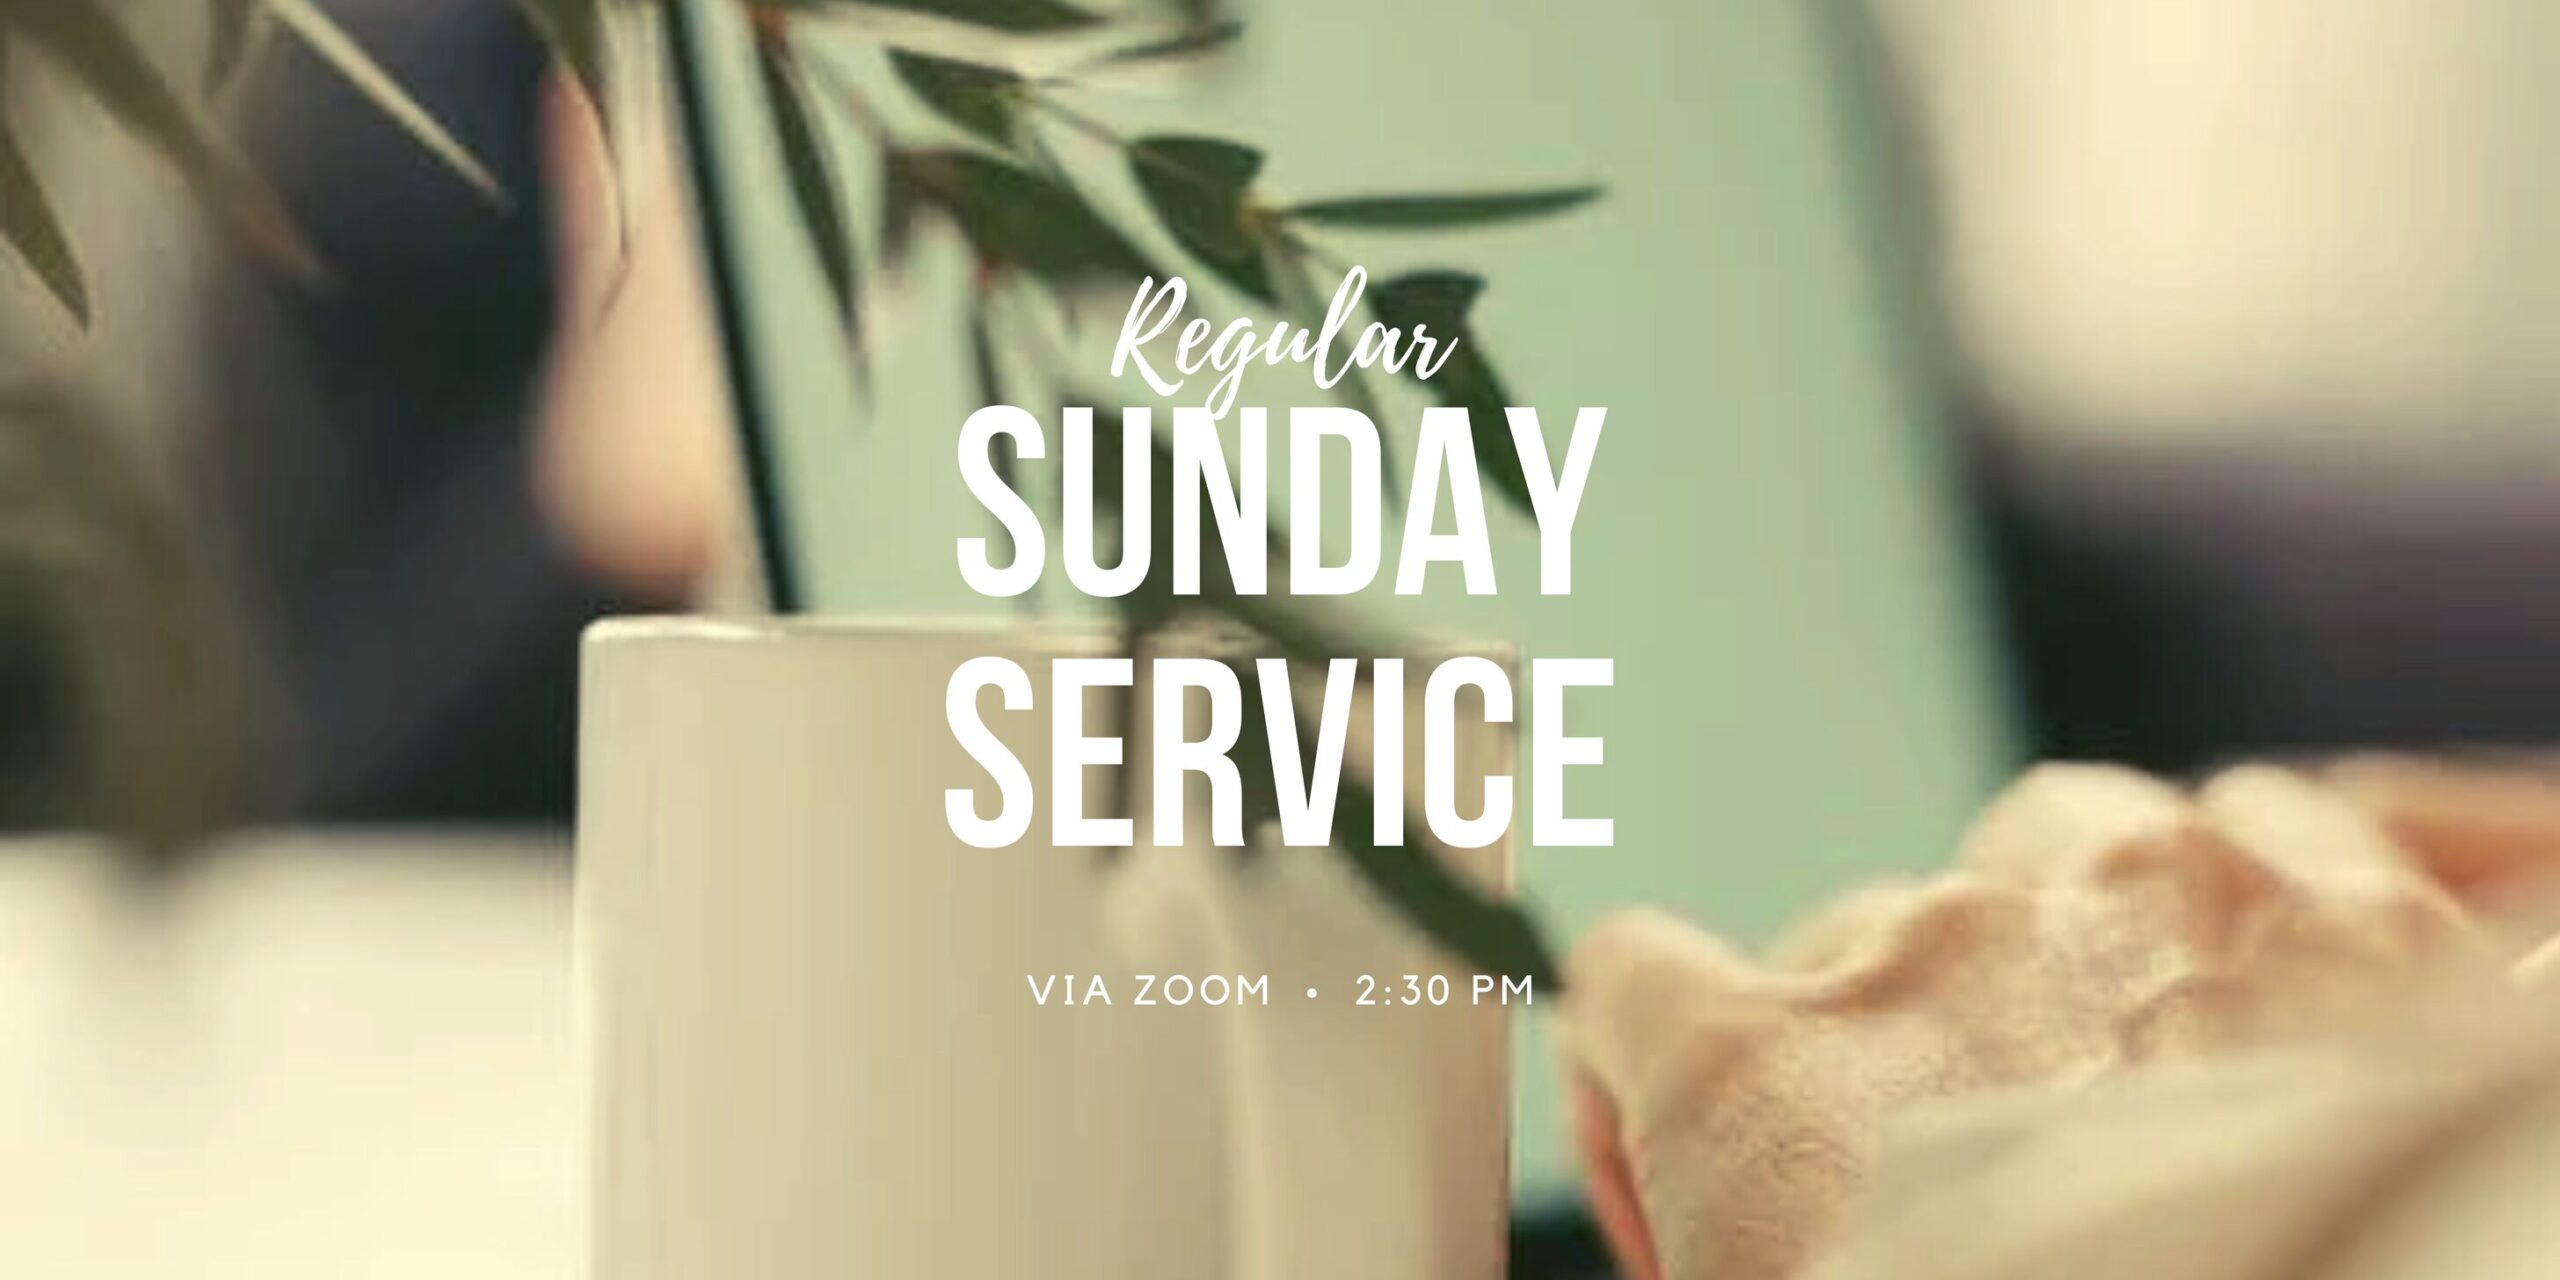 Reg Sunday Service